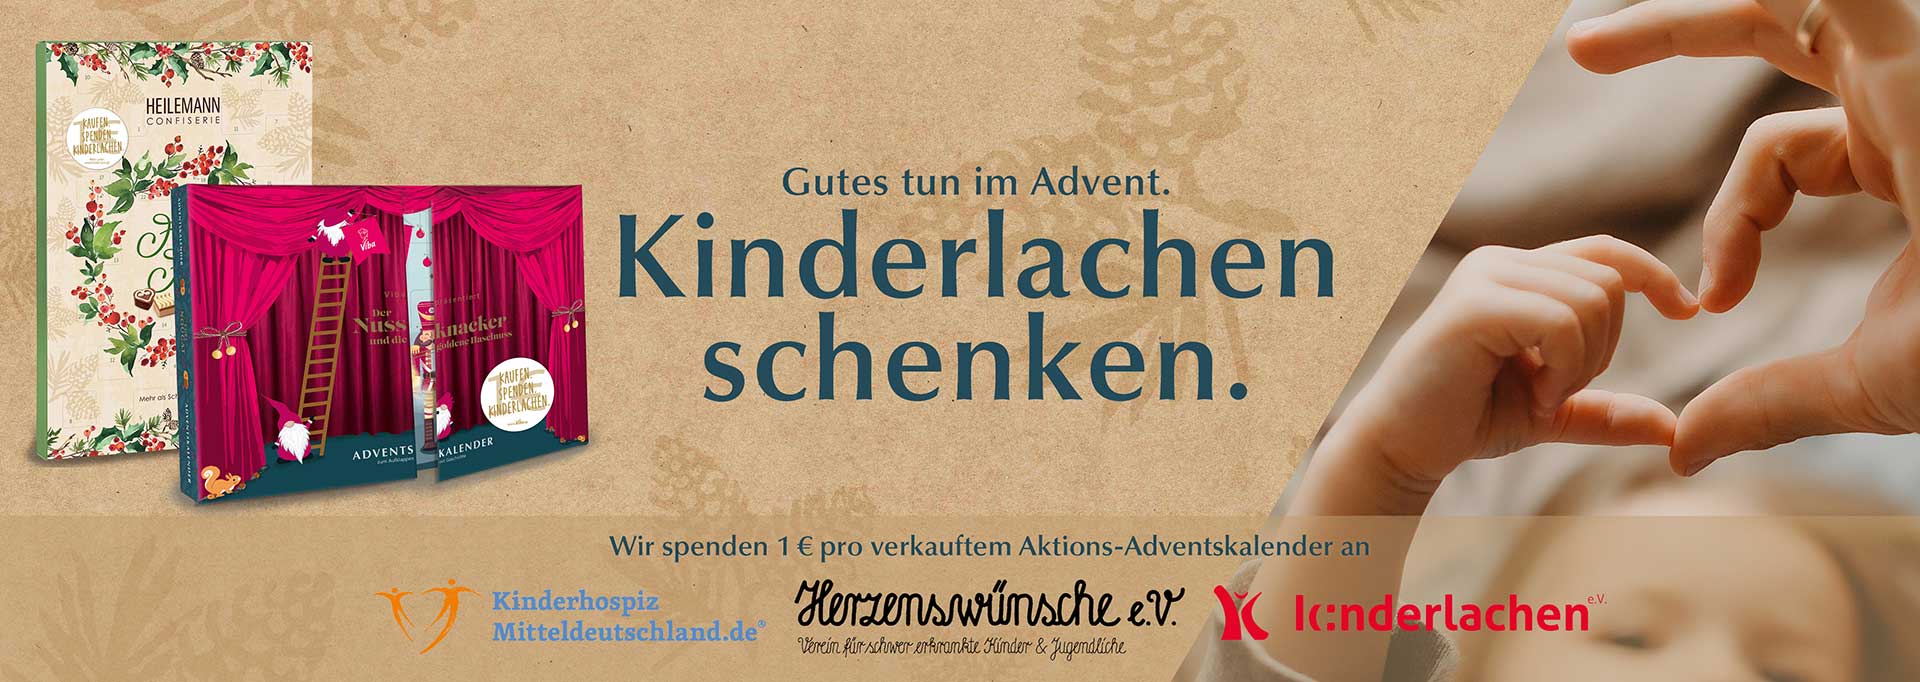 Slider zur Adventskalender-Spendenaktion von HEILEMANN